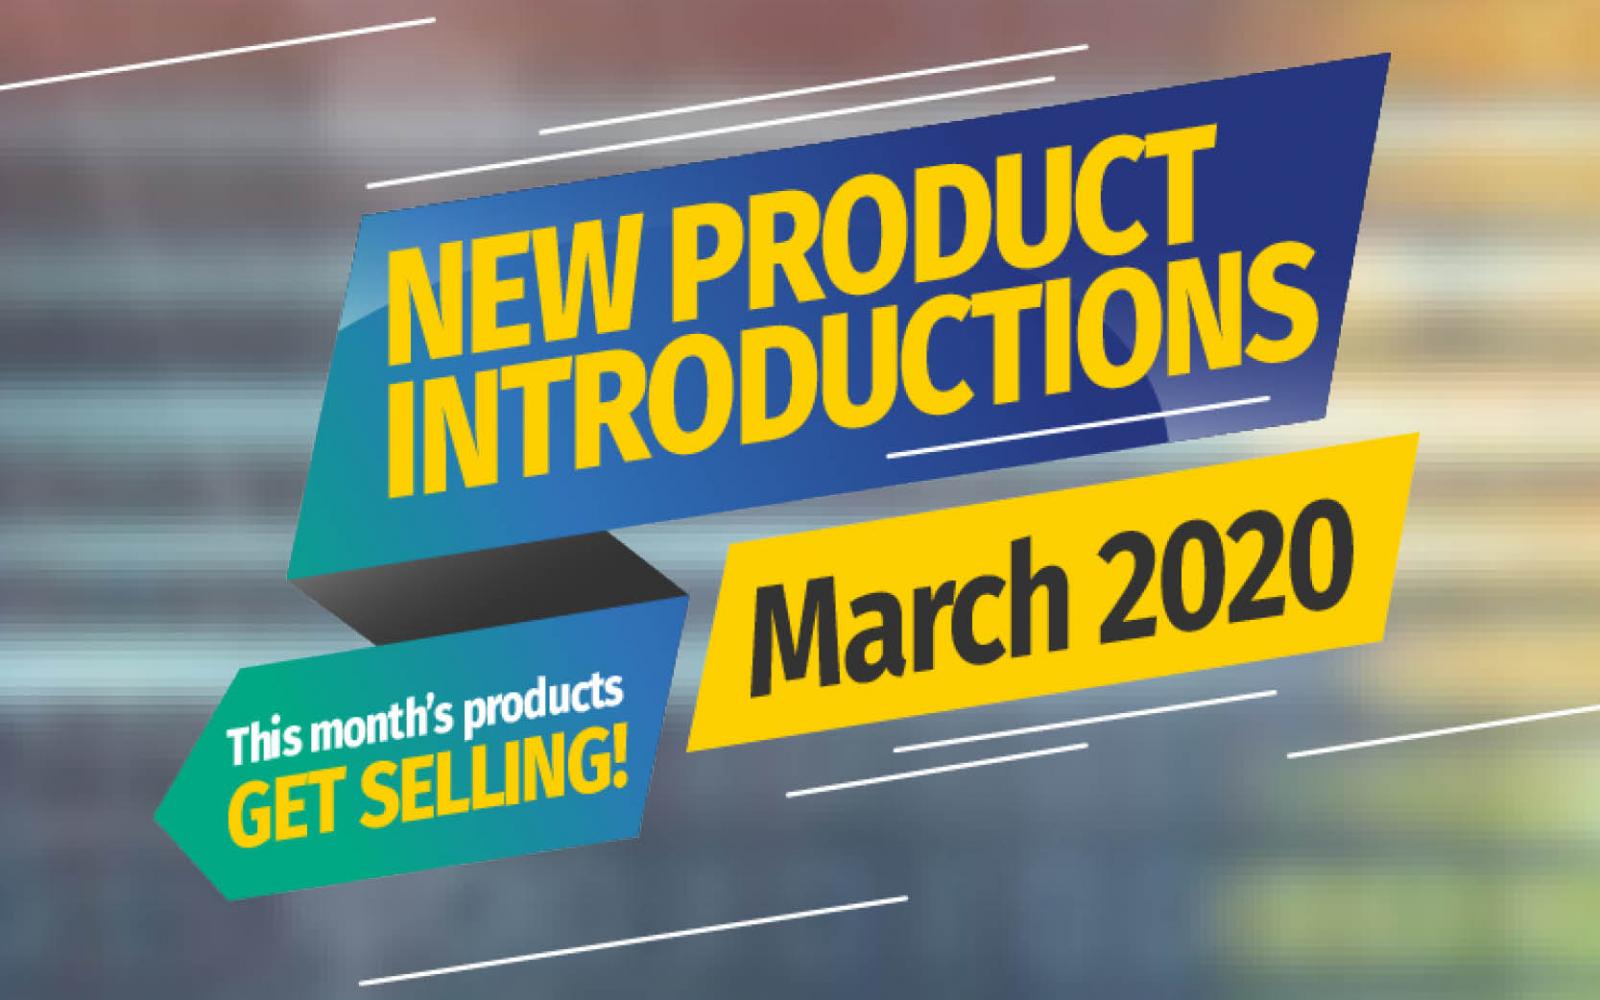 Featured Image: Presentazioni dei Nuovi Prodotti - Marzo 2020